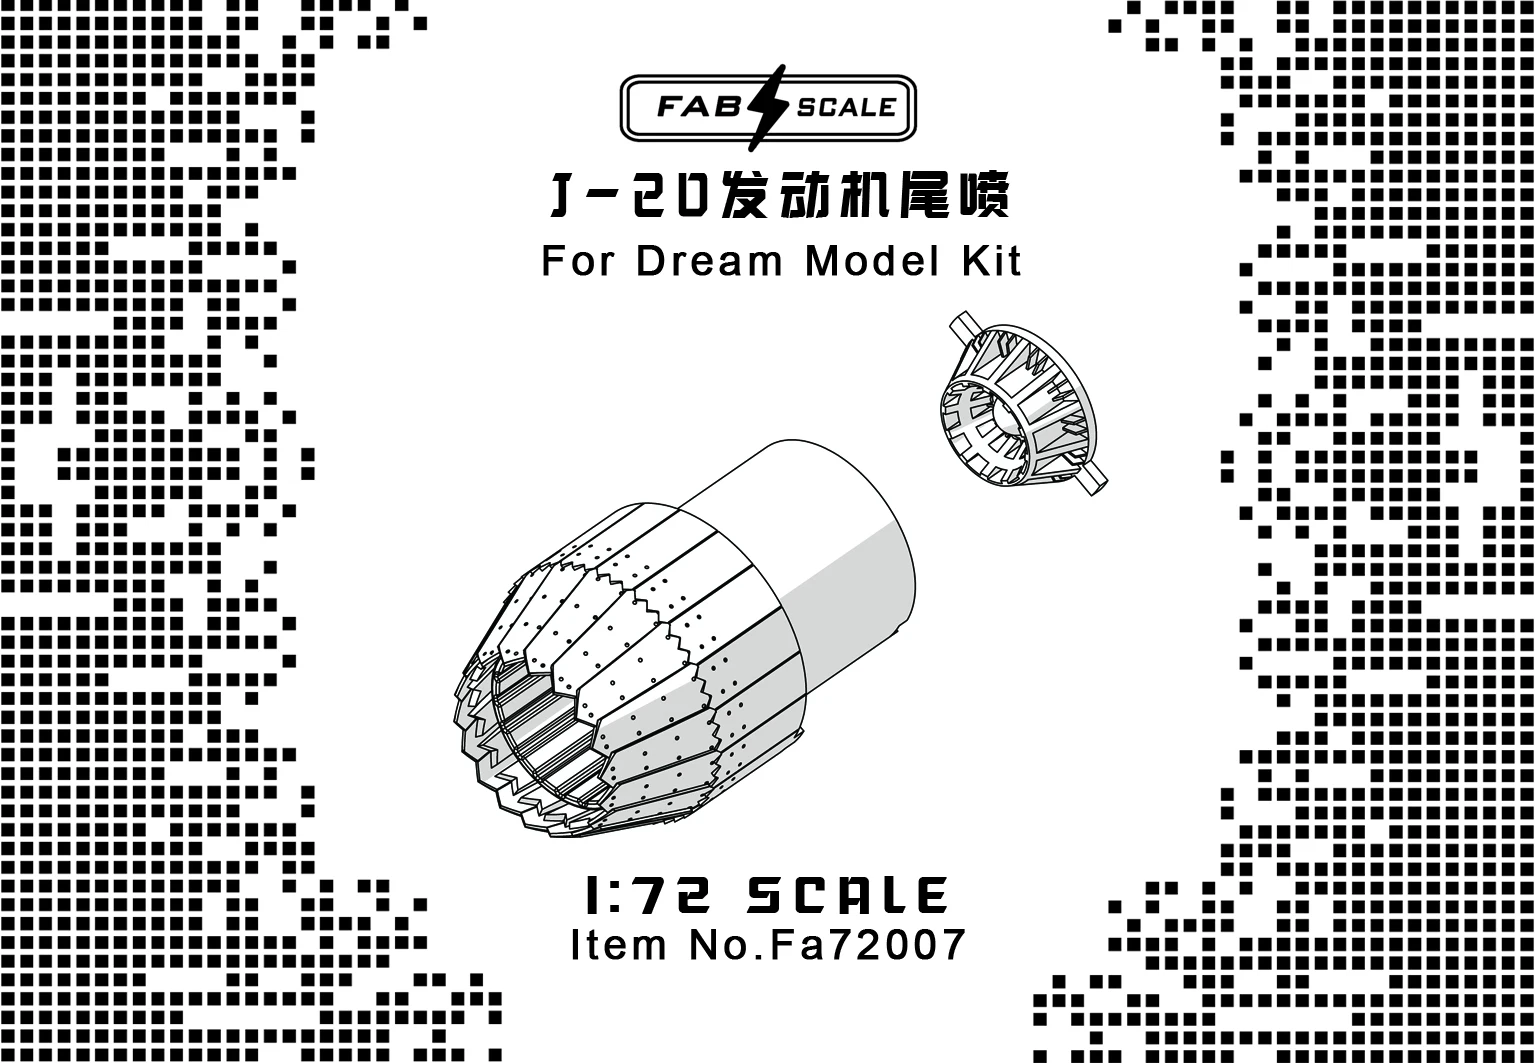 FAB FA72007 1/72 Ölçekli J-20 Motor Egzoz Nozulları (Rüya model seti)